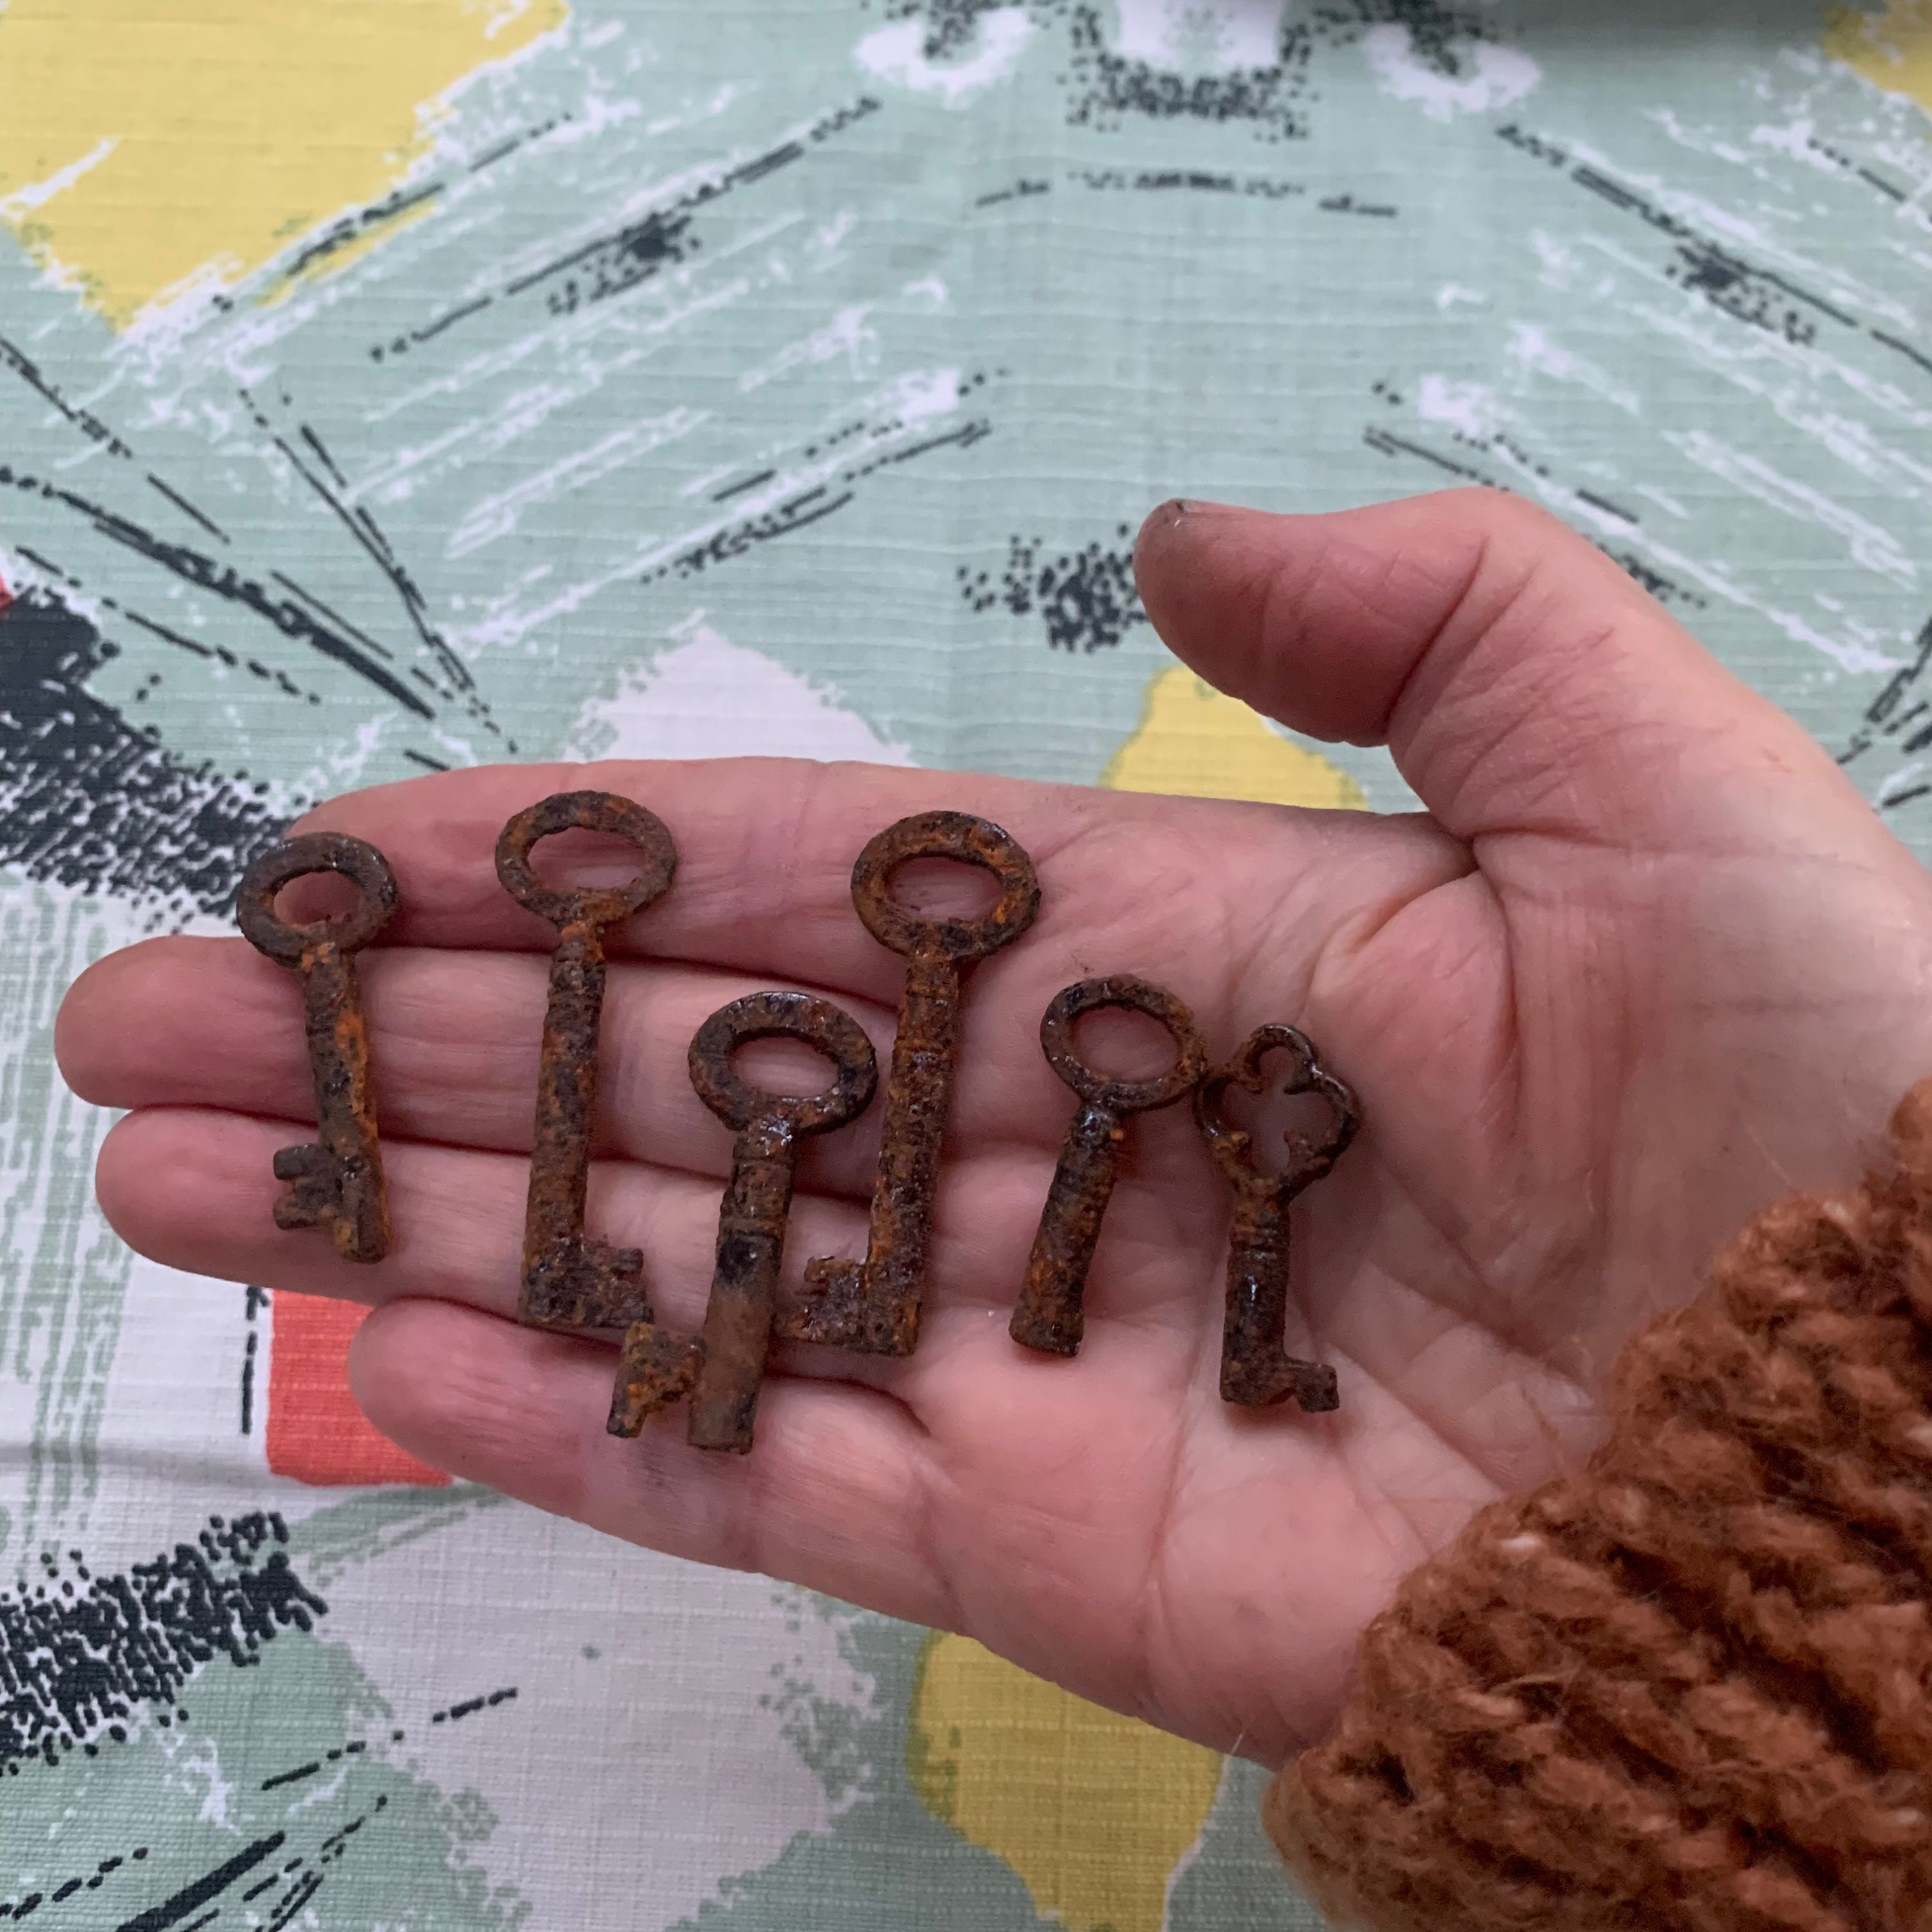 Vintage Skeleton Keys, Set of 3, Old Keys, Rusty Keys, Metal Keys